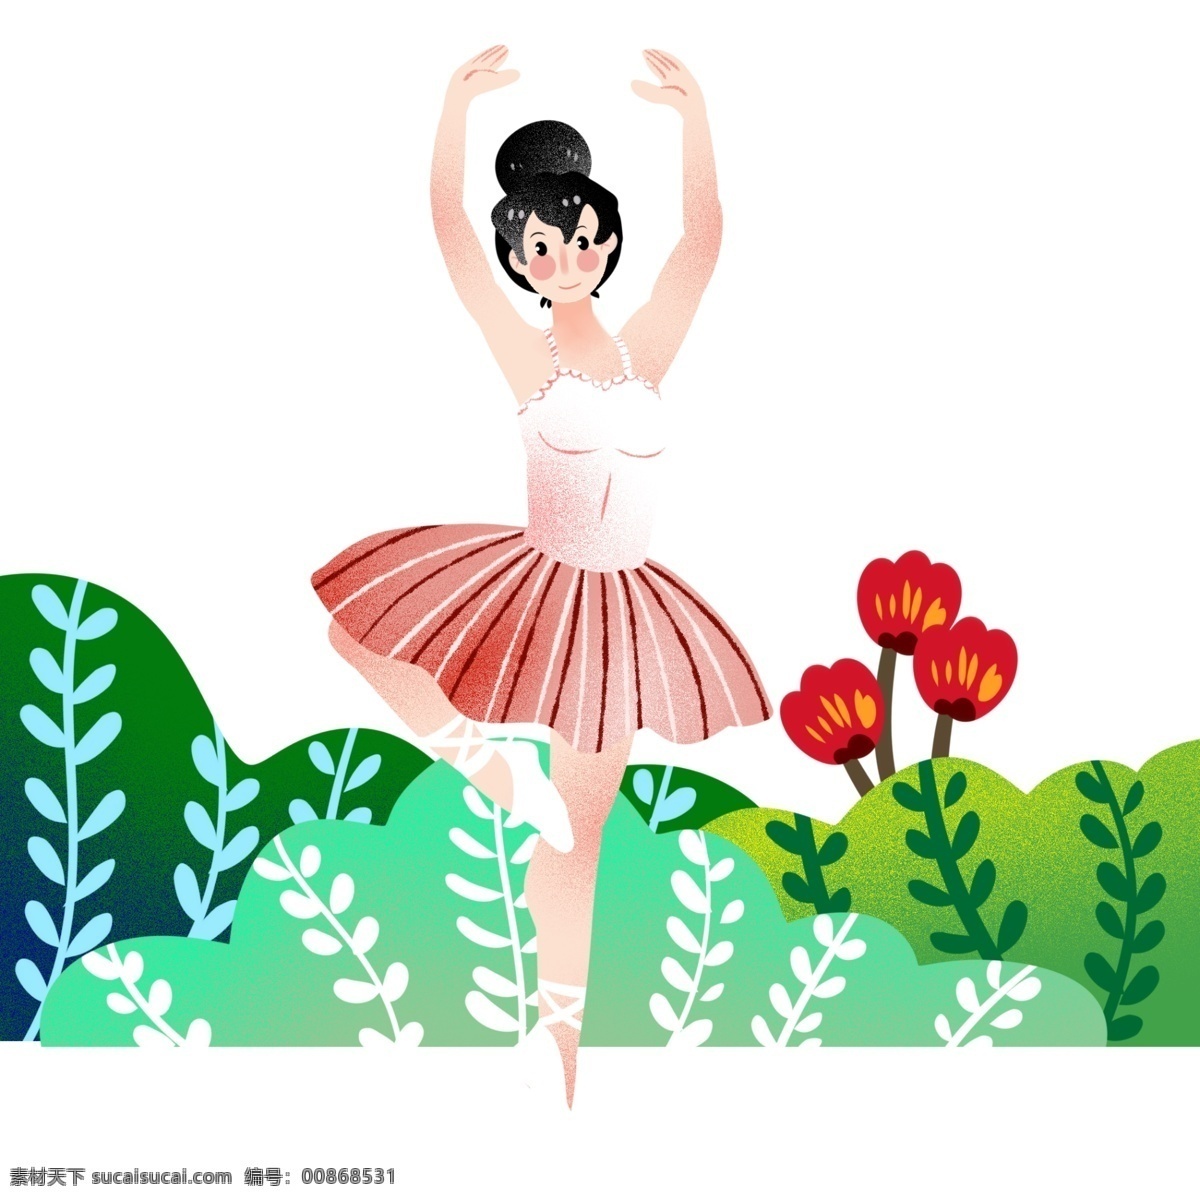 跳舞 女孩 小花 插画 运动健身插画 红色的小花 绿色的叶子 漂亮的小女孩 跳舞的小女孩 卡通人物